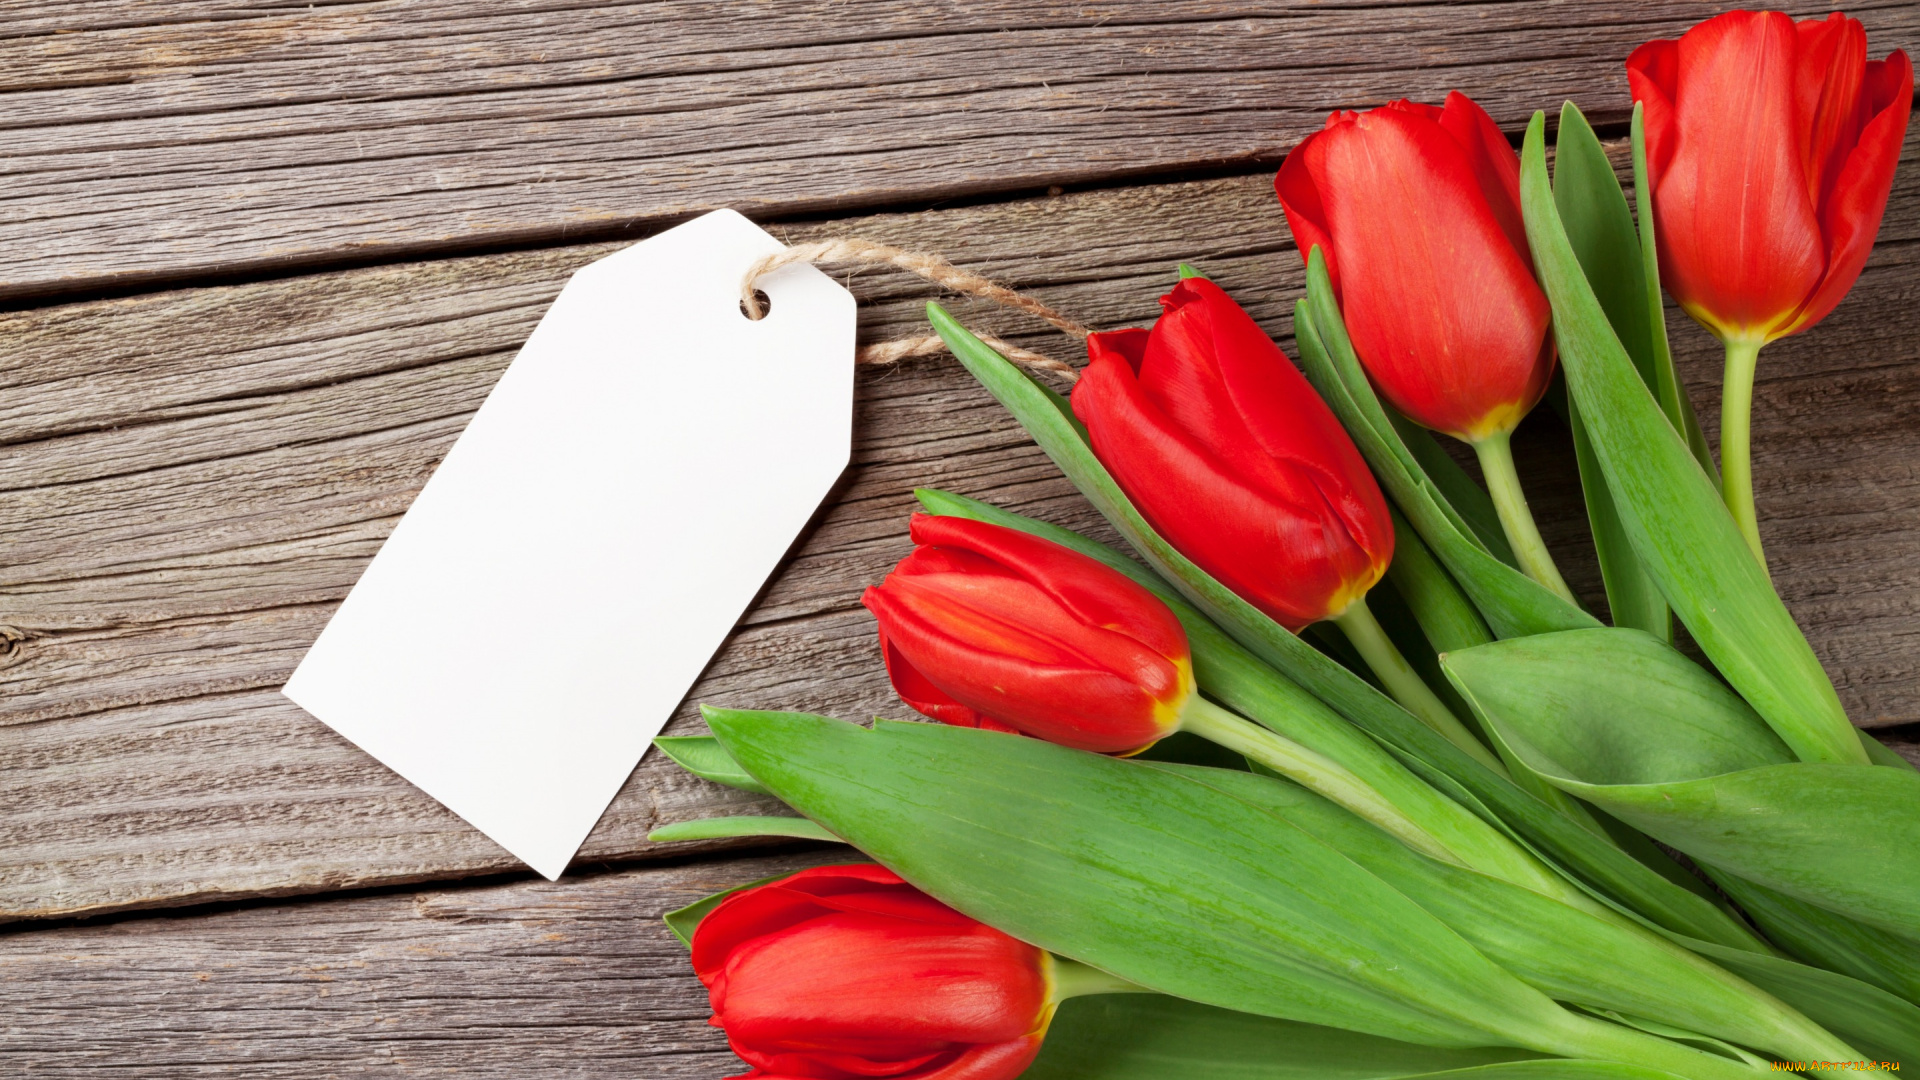 цветы, тюльпаны, wood, love, flowers, red, букет, любовь, tulips, romantic